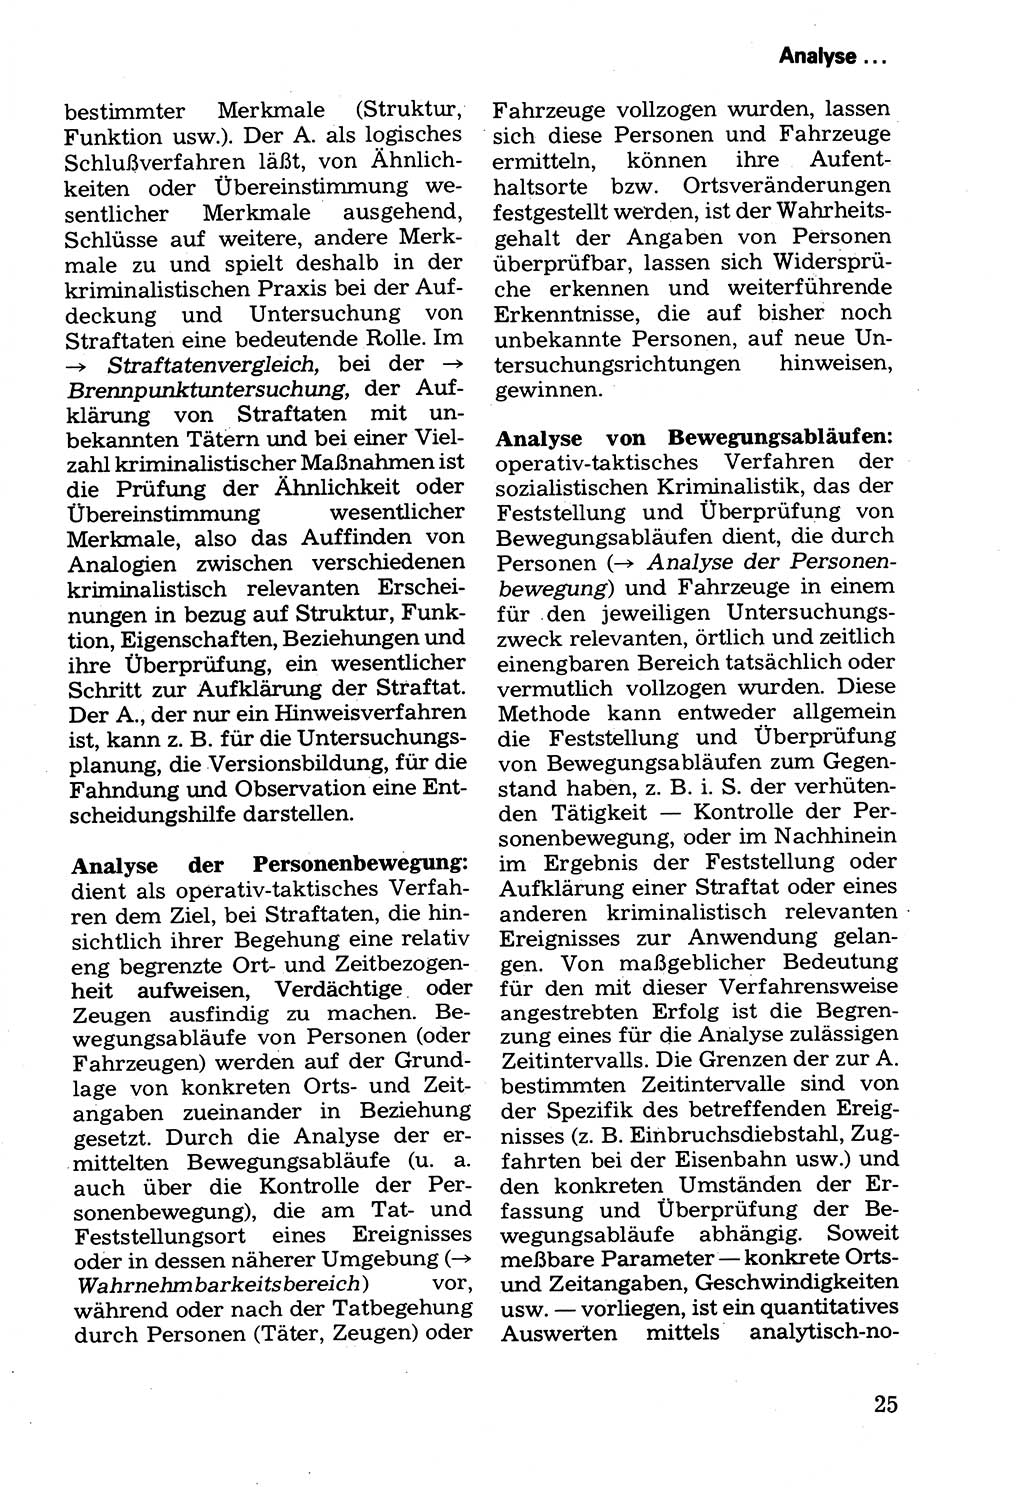 Wörterbuch der sozialistischen Kriminalistik [Deutsche Demokratische Republik (DDR)] 1981, Seite 25 (Wb. soz. Krim. DDR 1981, S. 25)